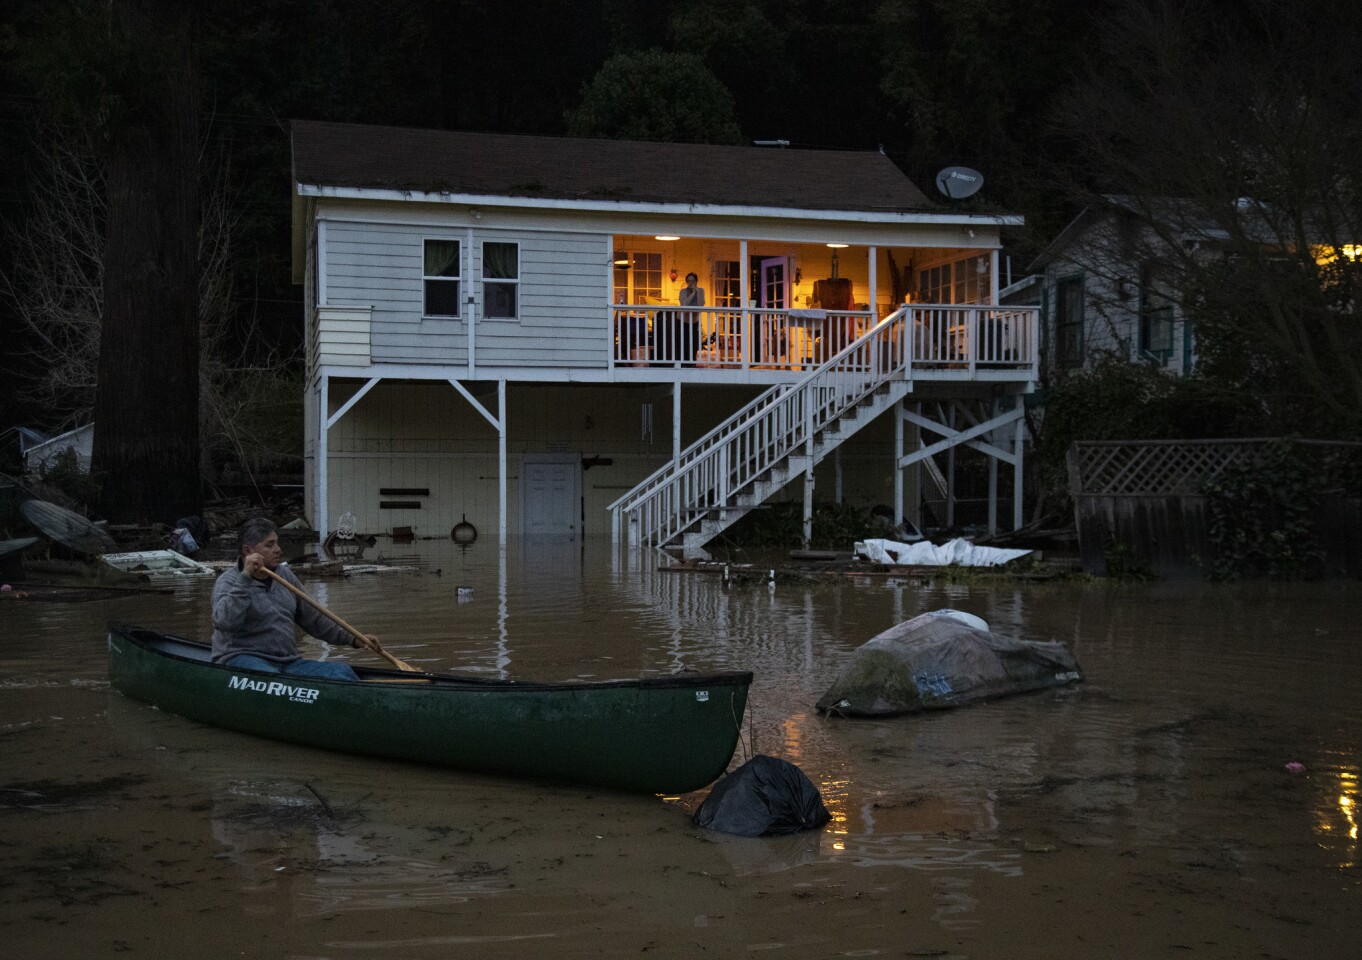 Richard López, de Río Nido, California, usa una canoa para recuperar su moto acuática, que flotaba en las aguas de la inundación frente a su casa en el Russian River Valley.